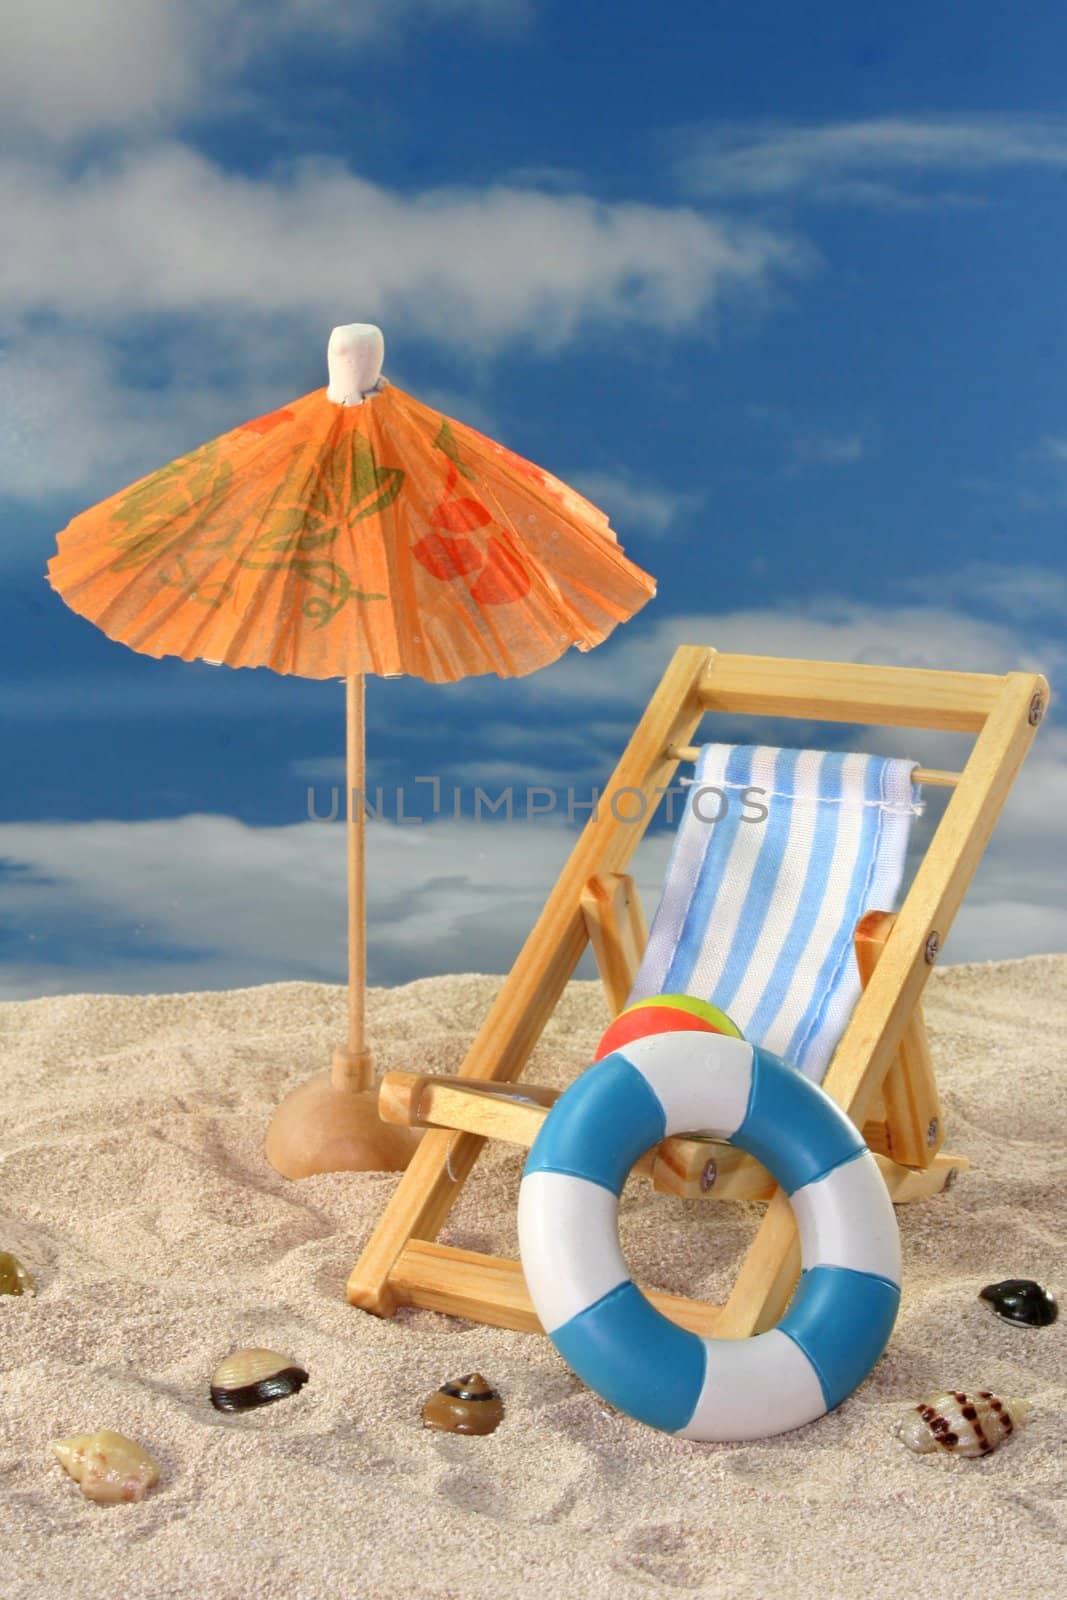 Deck chair and sun umbrella on a sandy beach